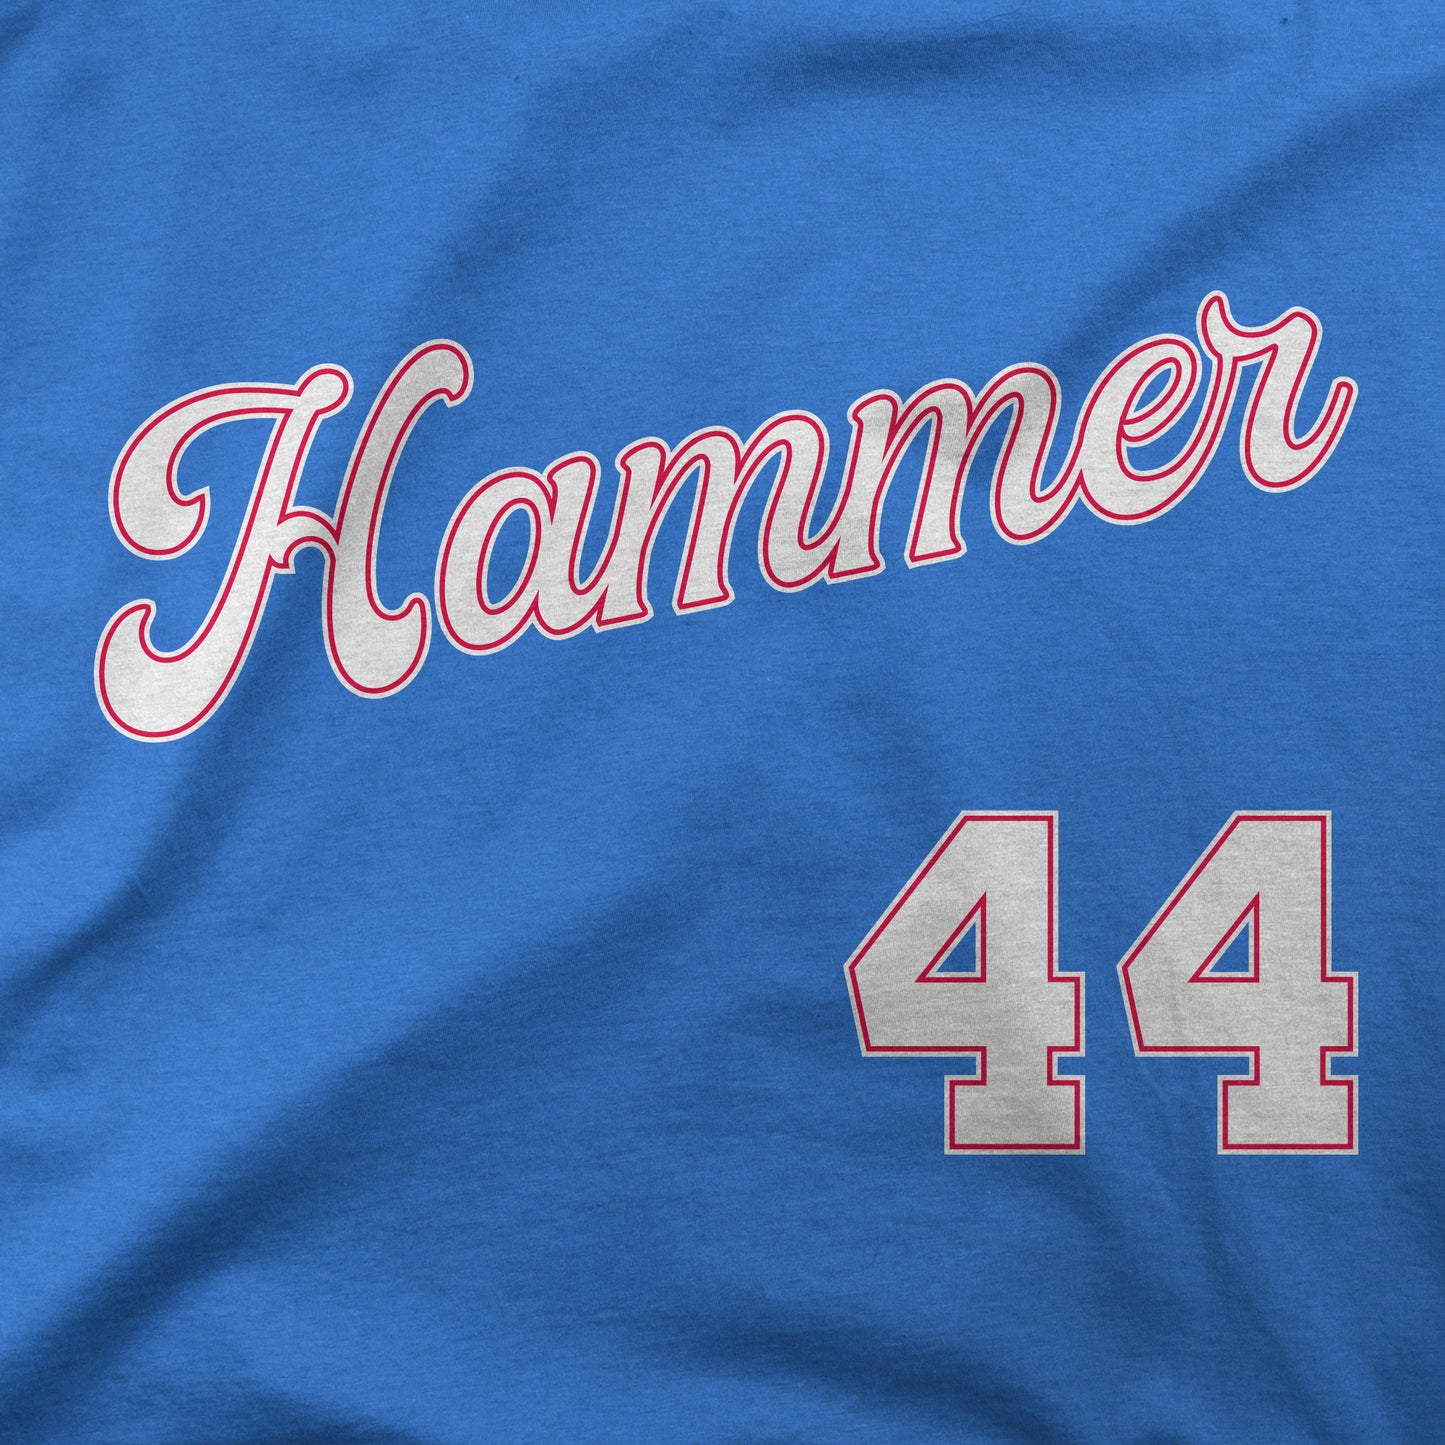 Hammer 44 | T-Shirt